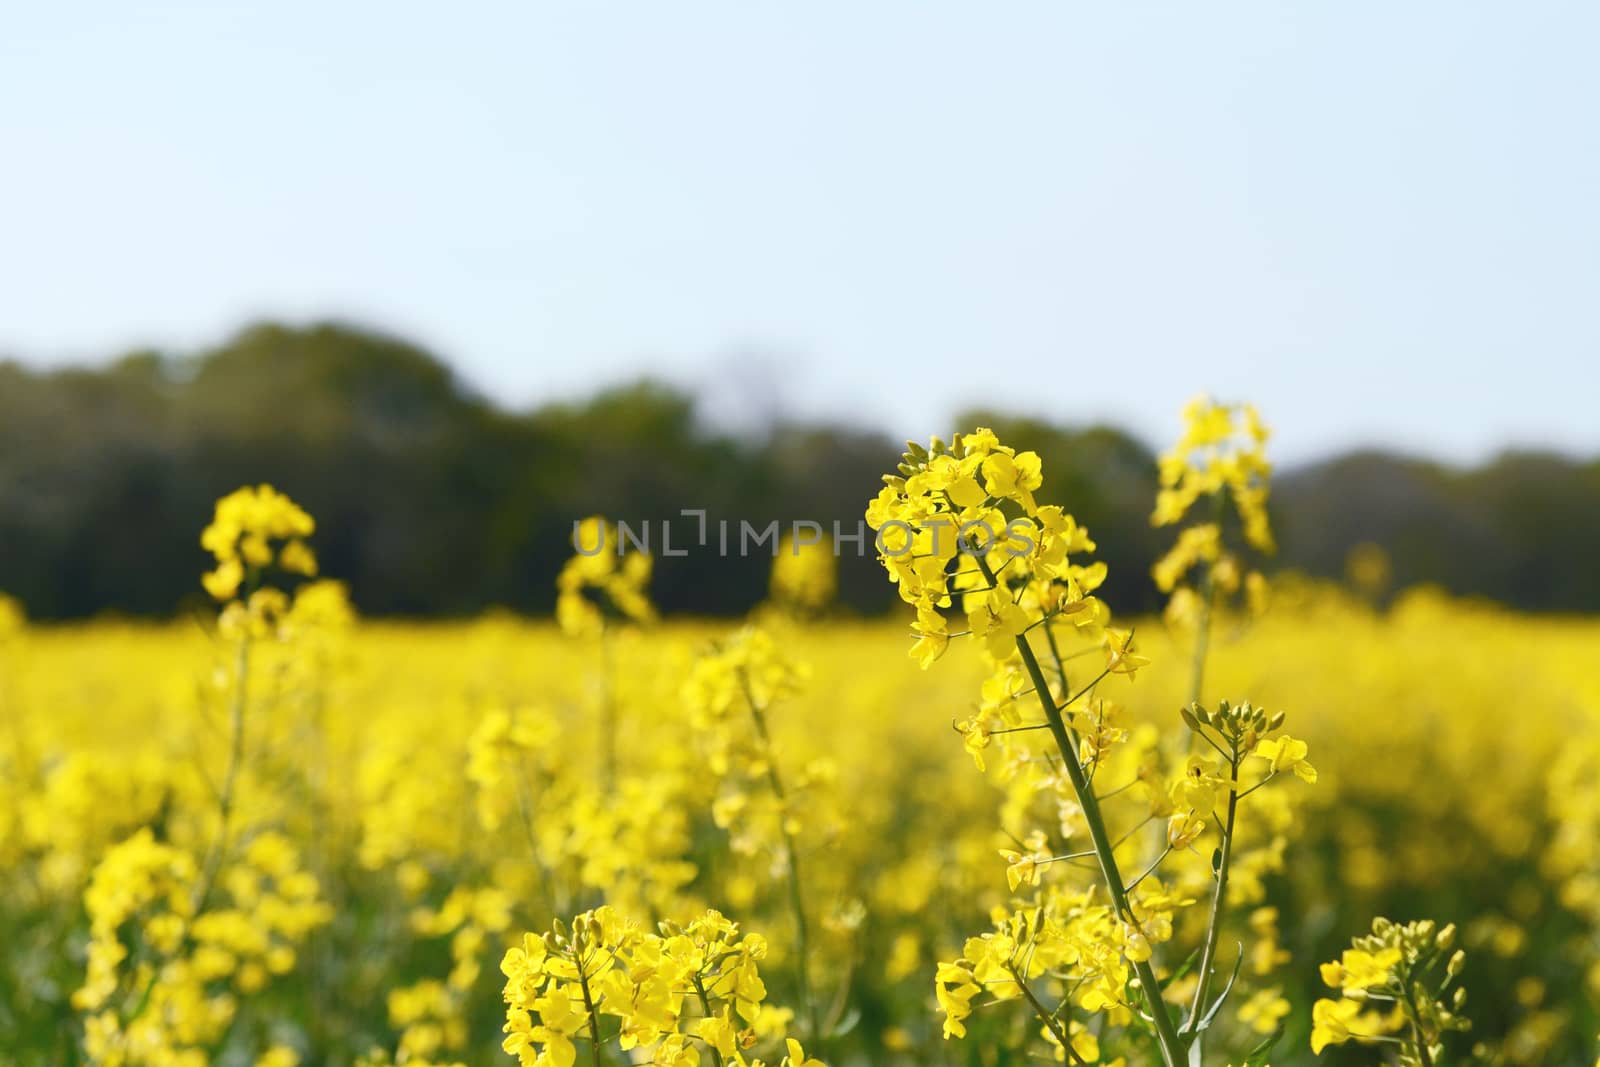 Yellow oilseed rape flower against a farm field by sarahdoow